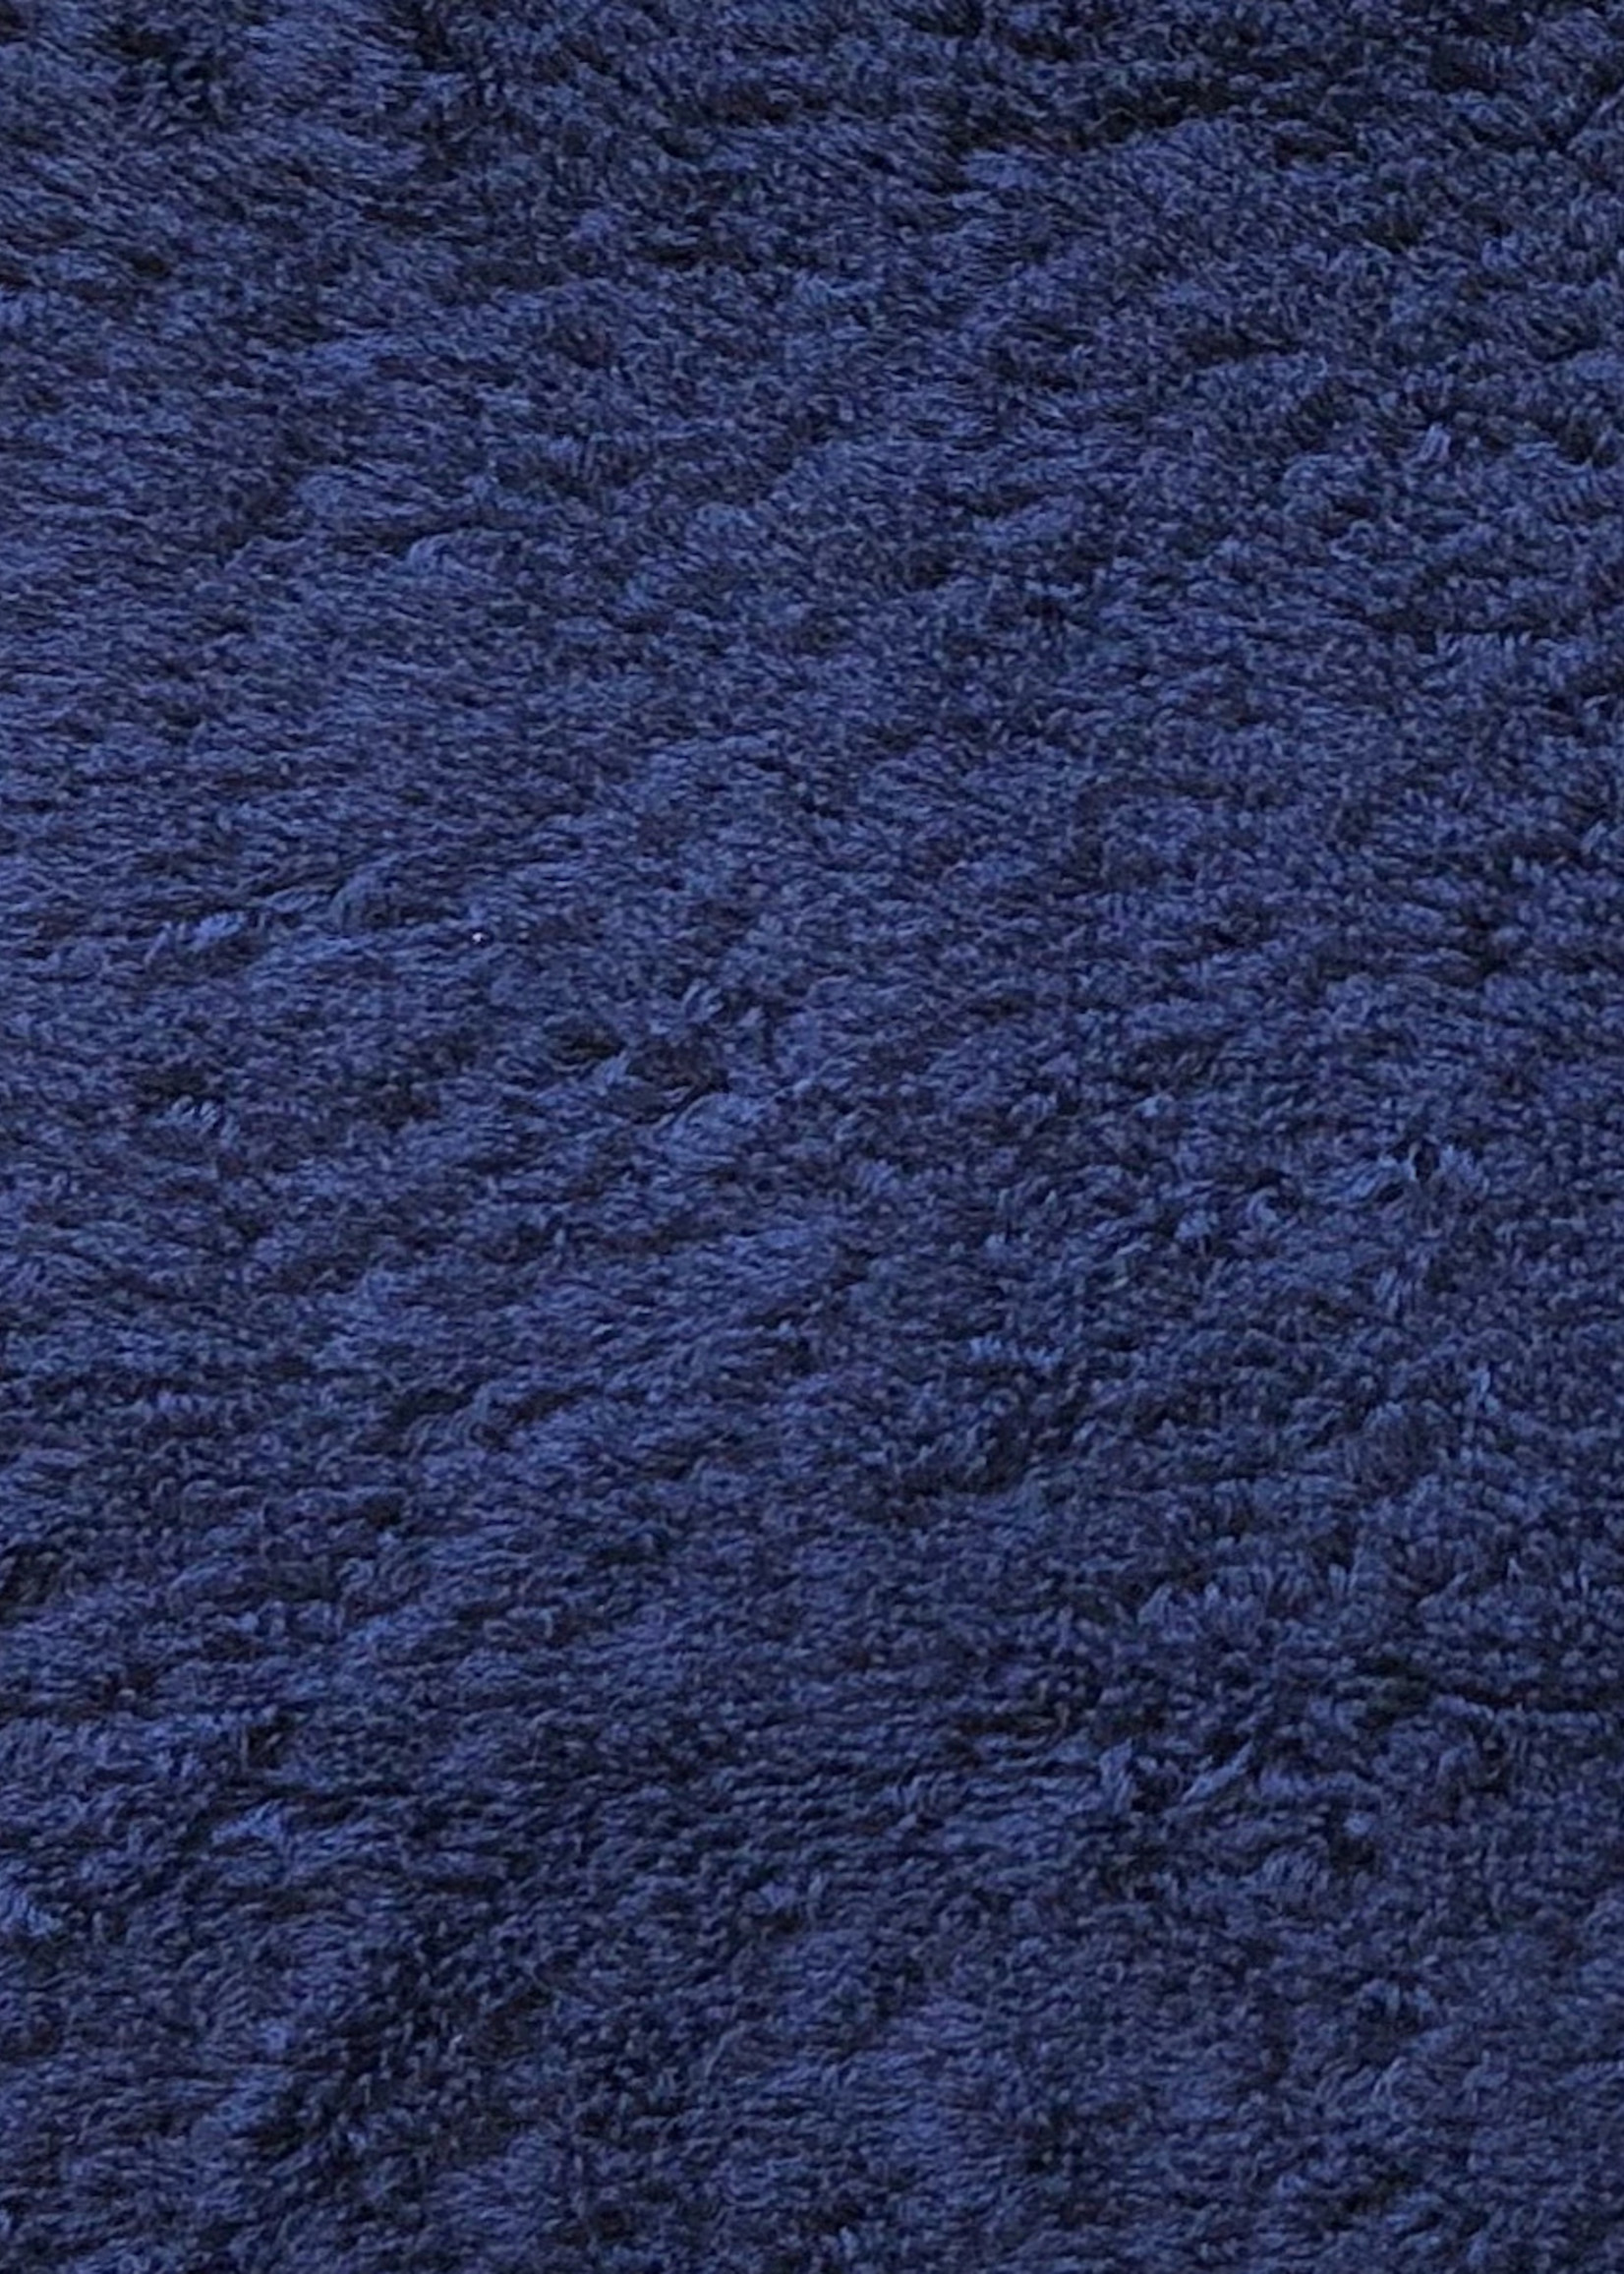 Abyss & Habidecor Super Pile Cadette Blue Towels